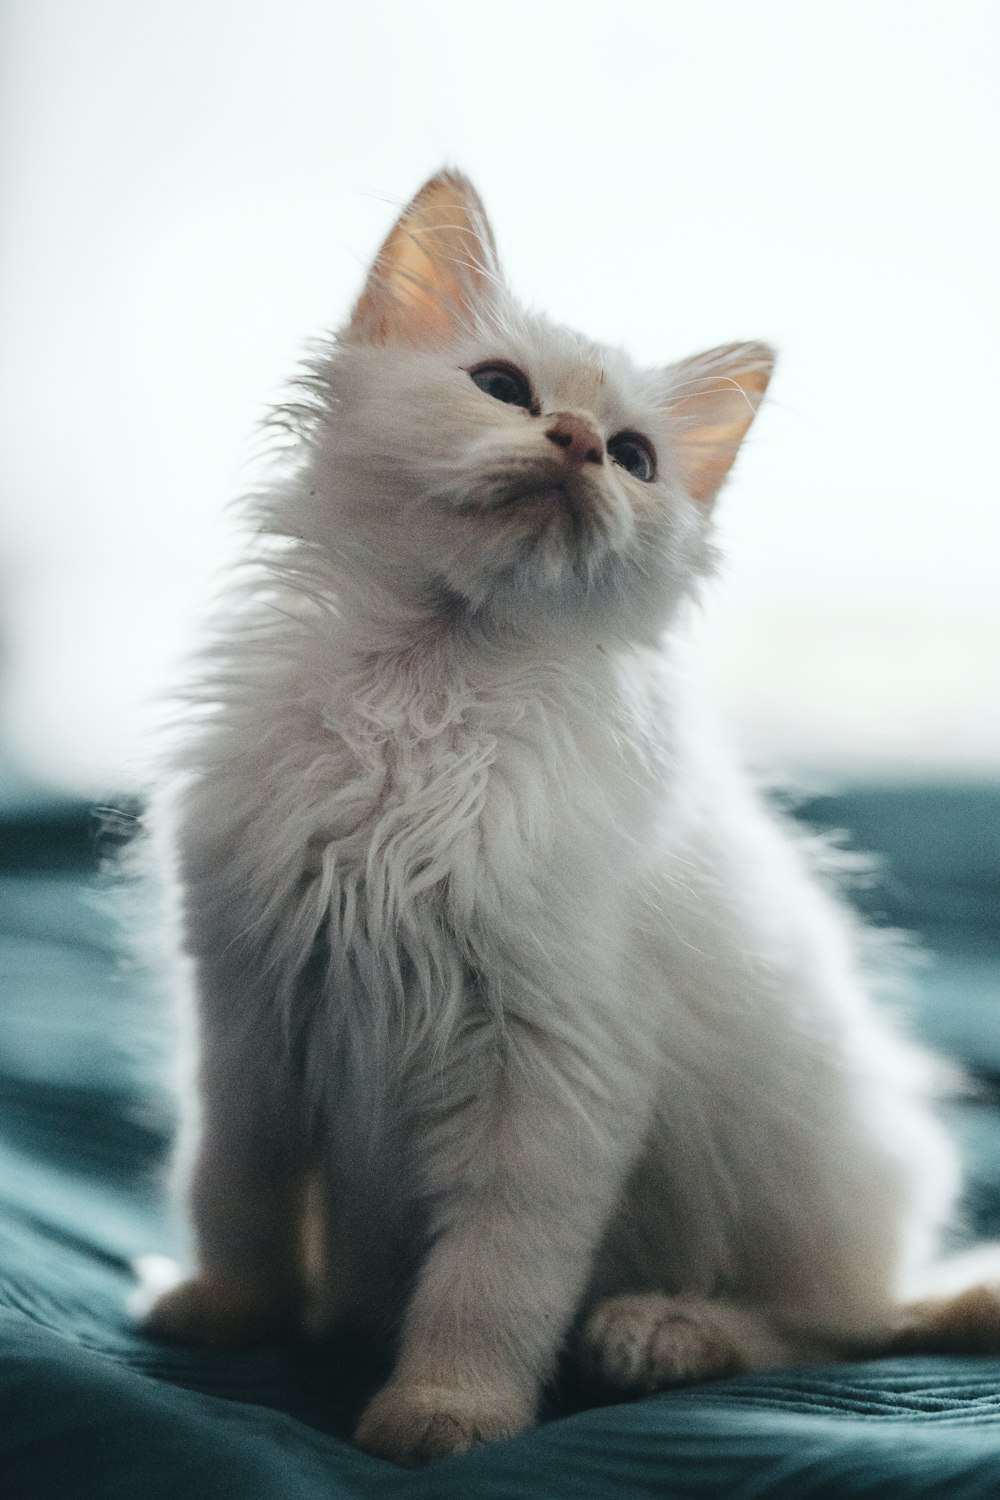 white long fur cat on blue textile